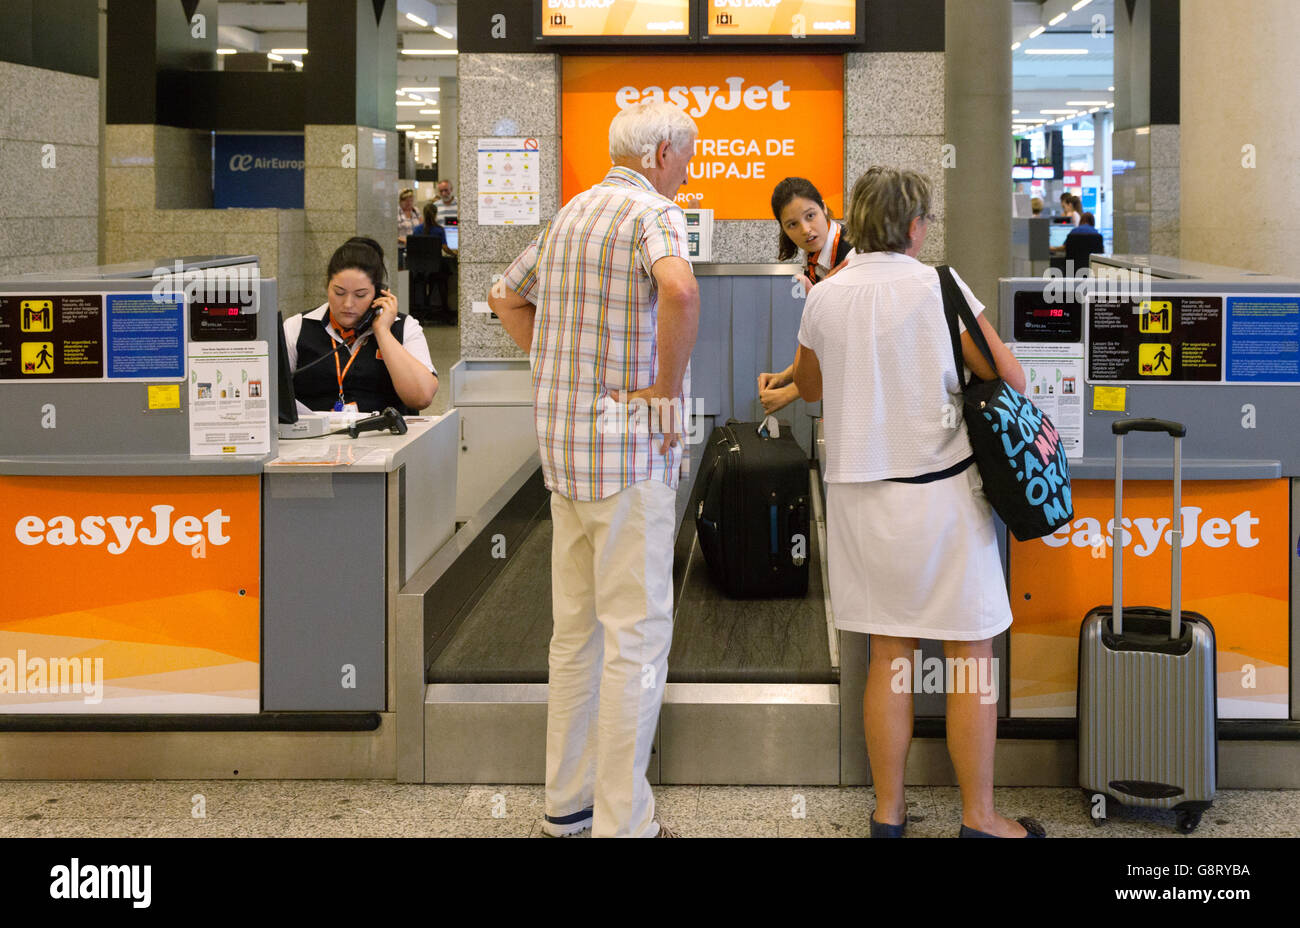 Comprobación de equipaje del aeropuerto de pasajeros; en el de Easyjet,  facturación de equipajes del aeropuerto de Palma, Mallorca (Mallorca),  Islas Baleares, España Europa Fotografía de stock - Alamy